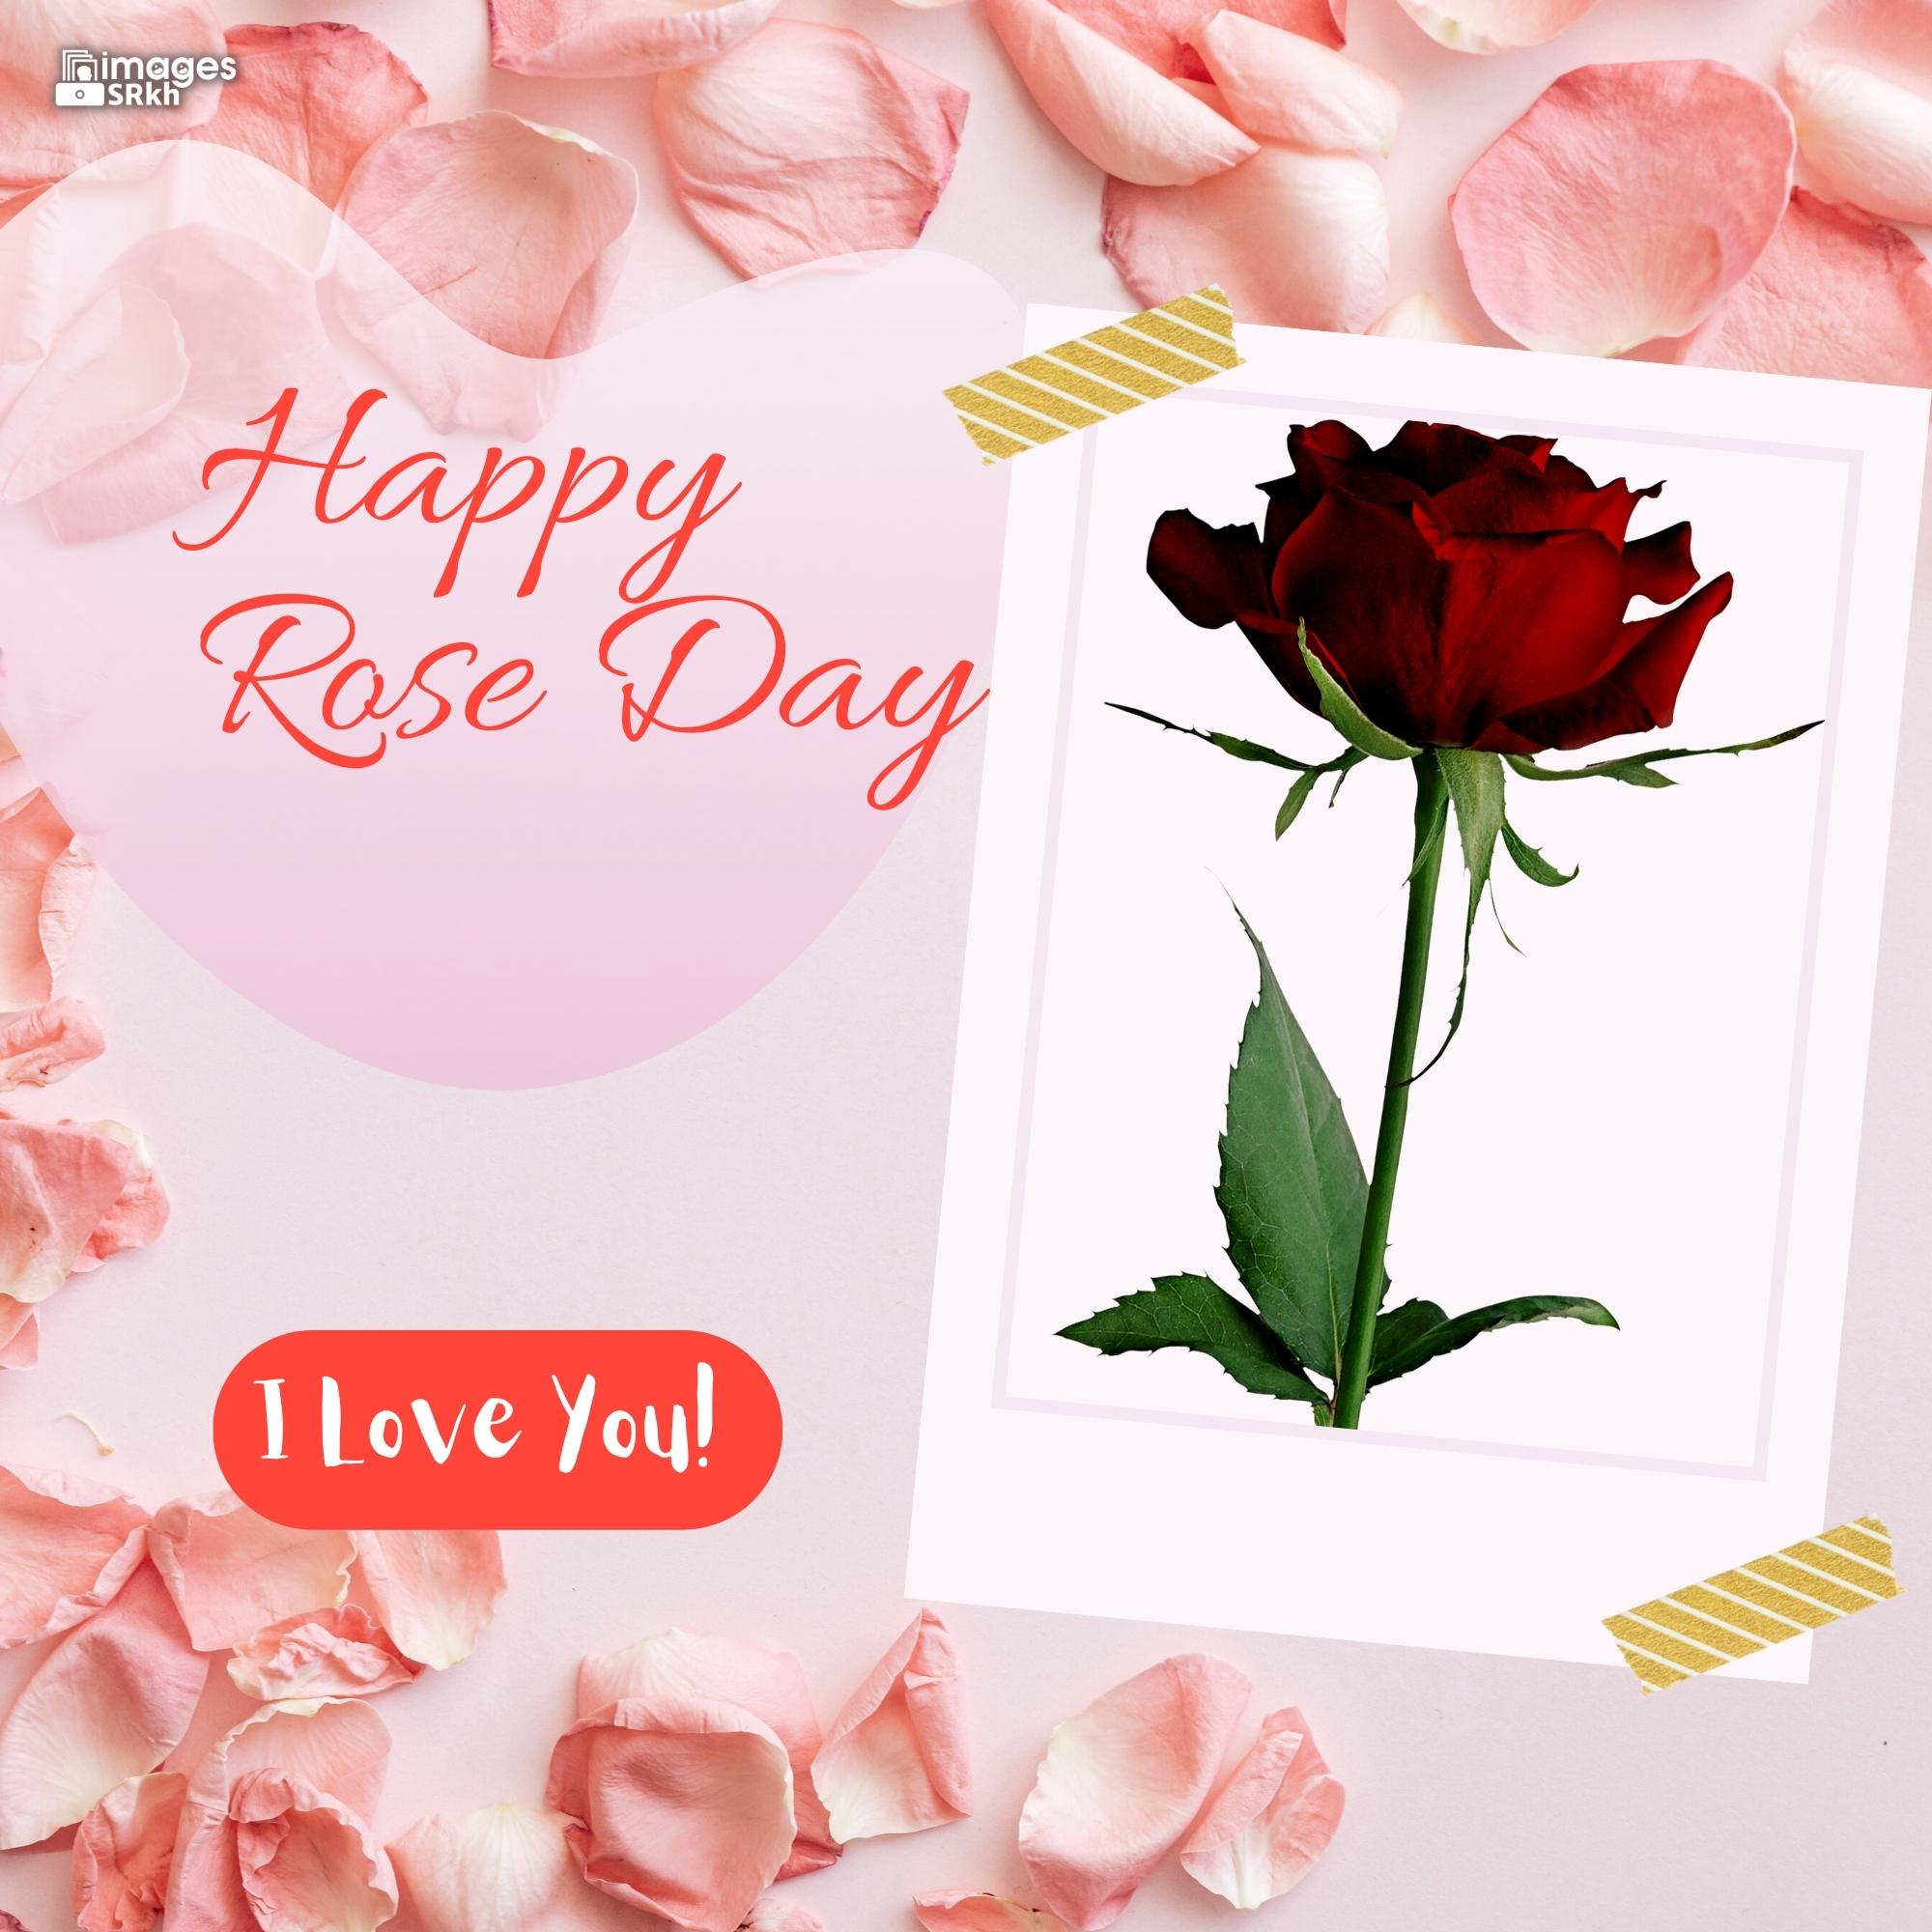 Rose Day Wishing Image Hd Download (11)